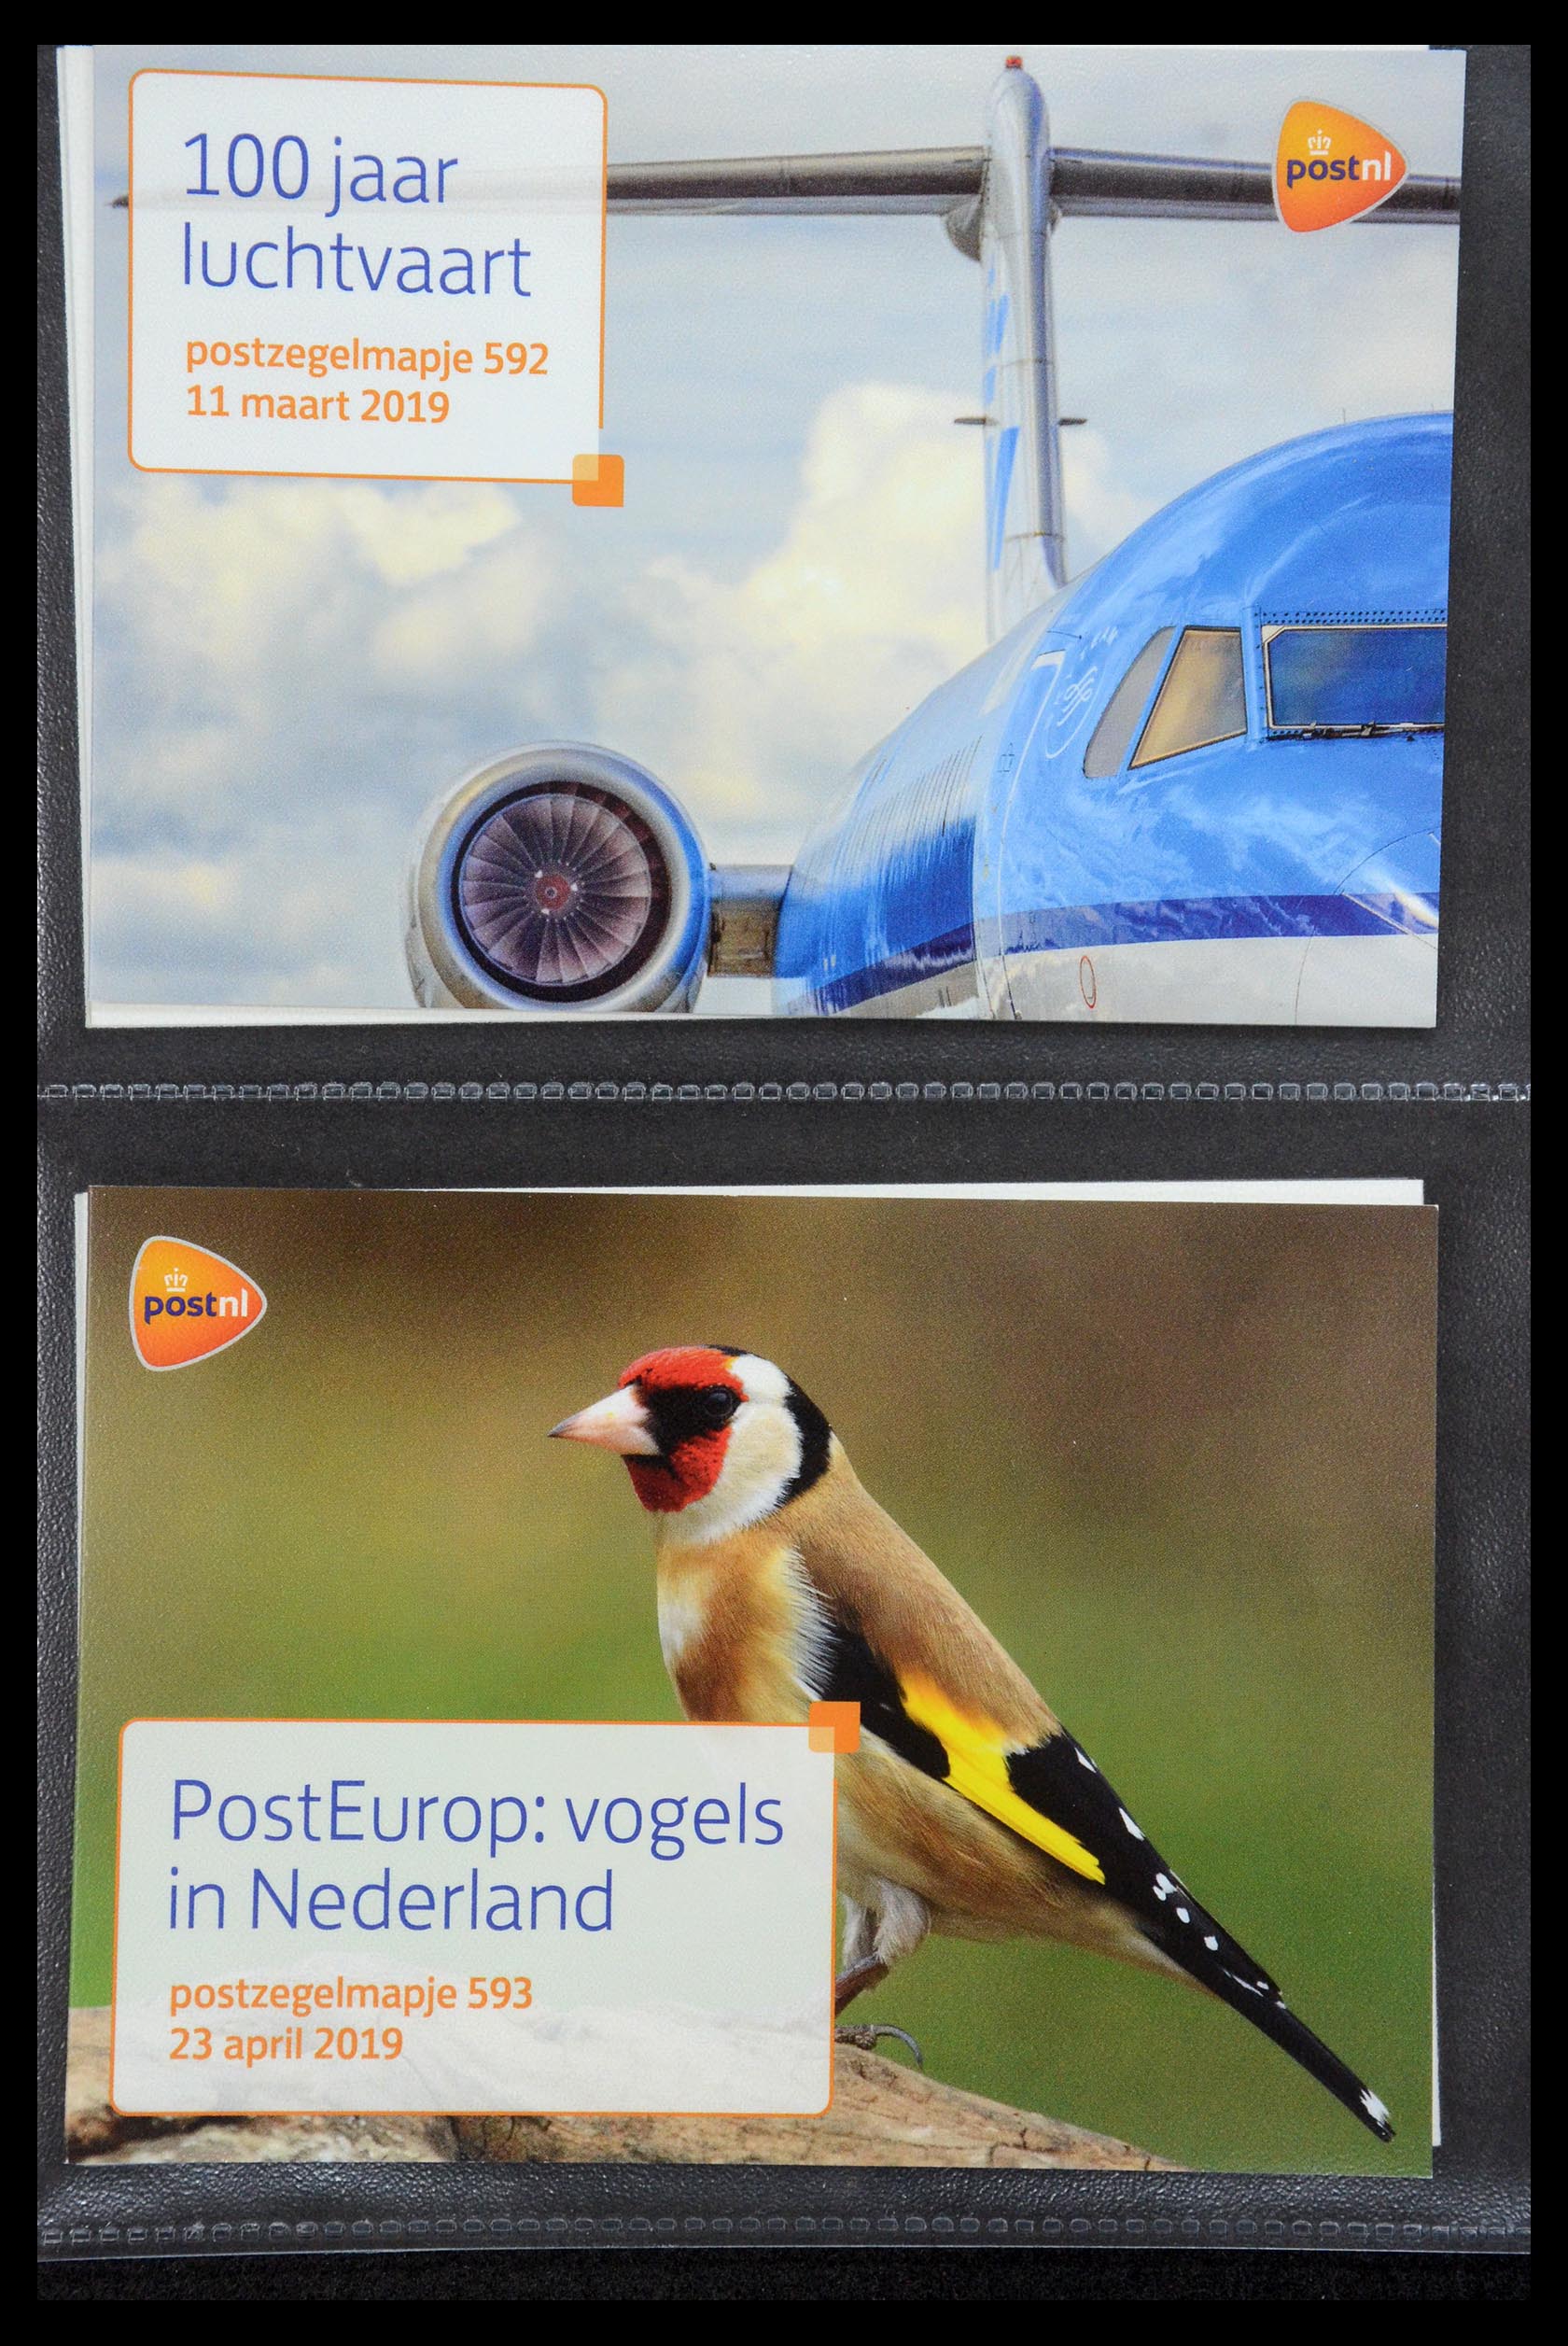 35187 358 - Stamp Collection 35187 Netherlands PTT presentation packs 1982-2019!